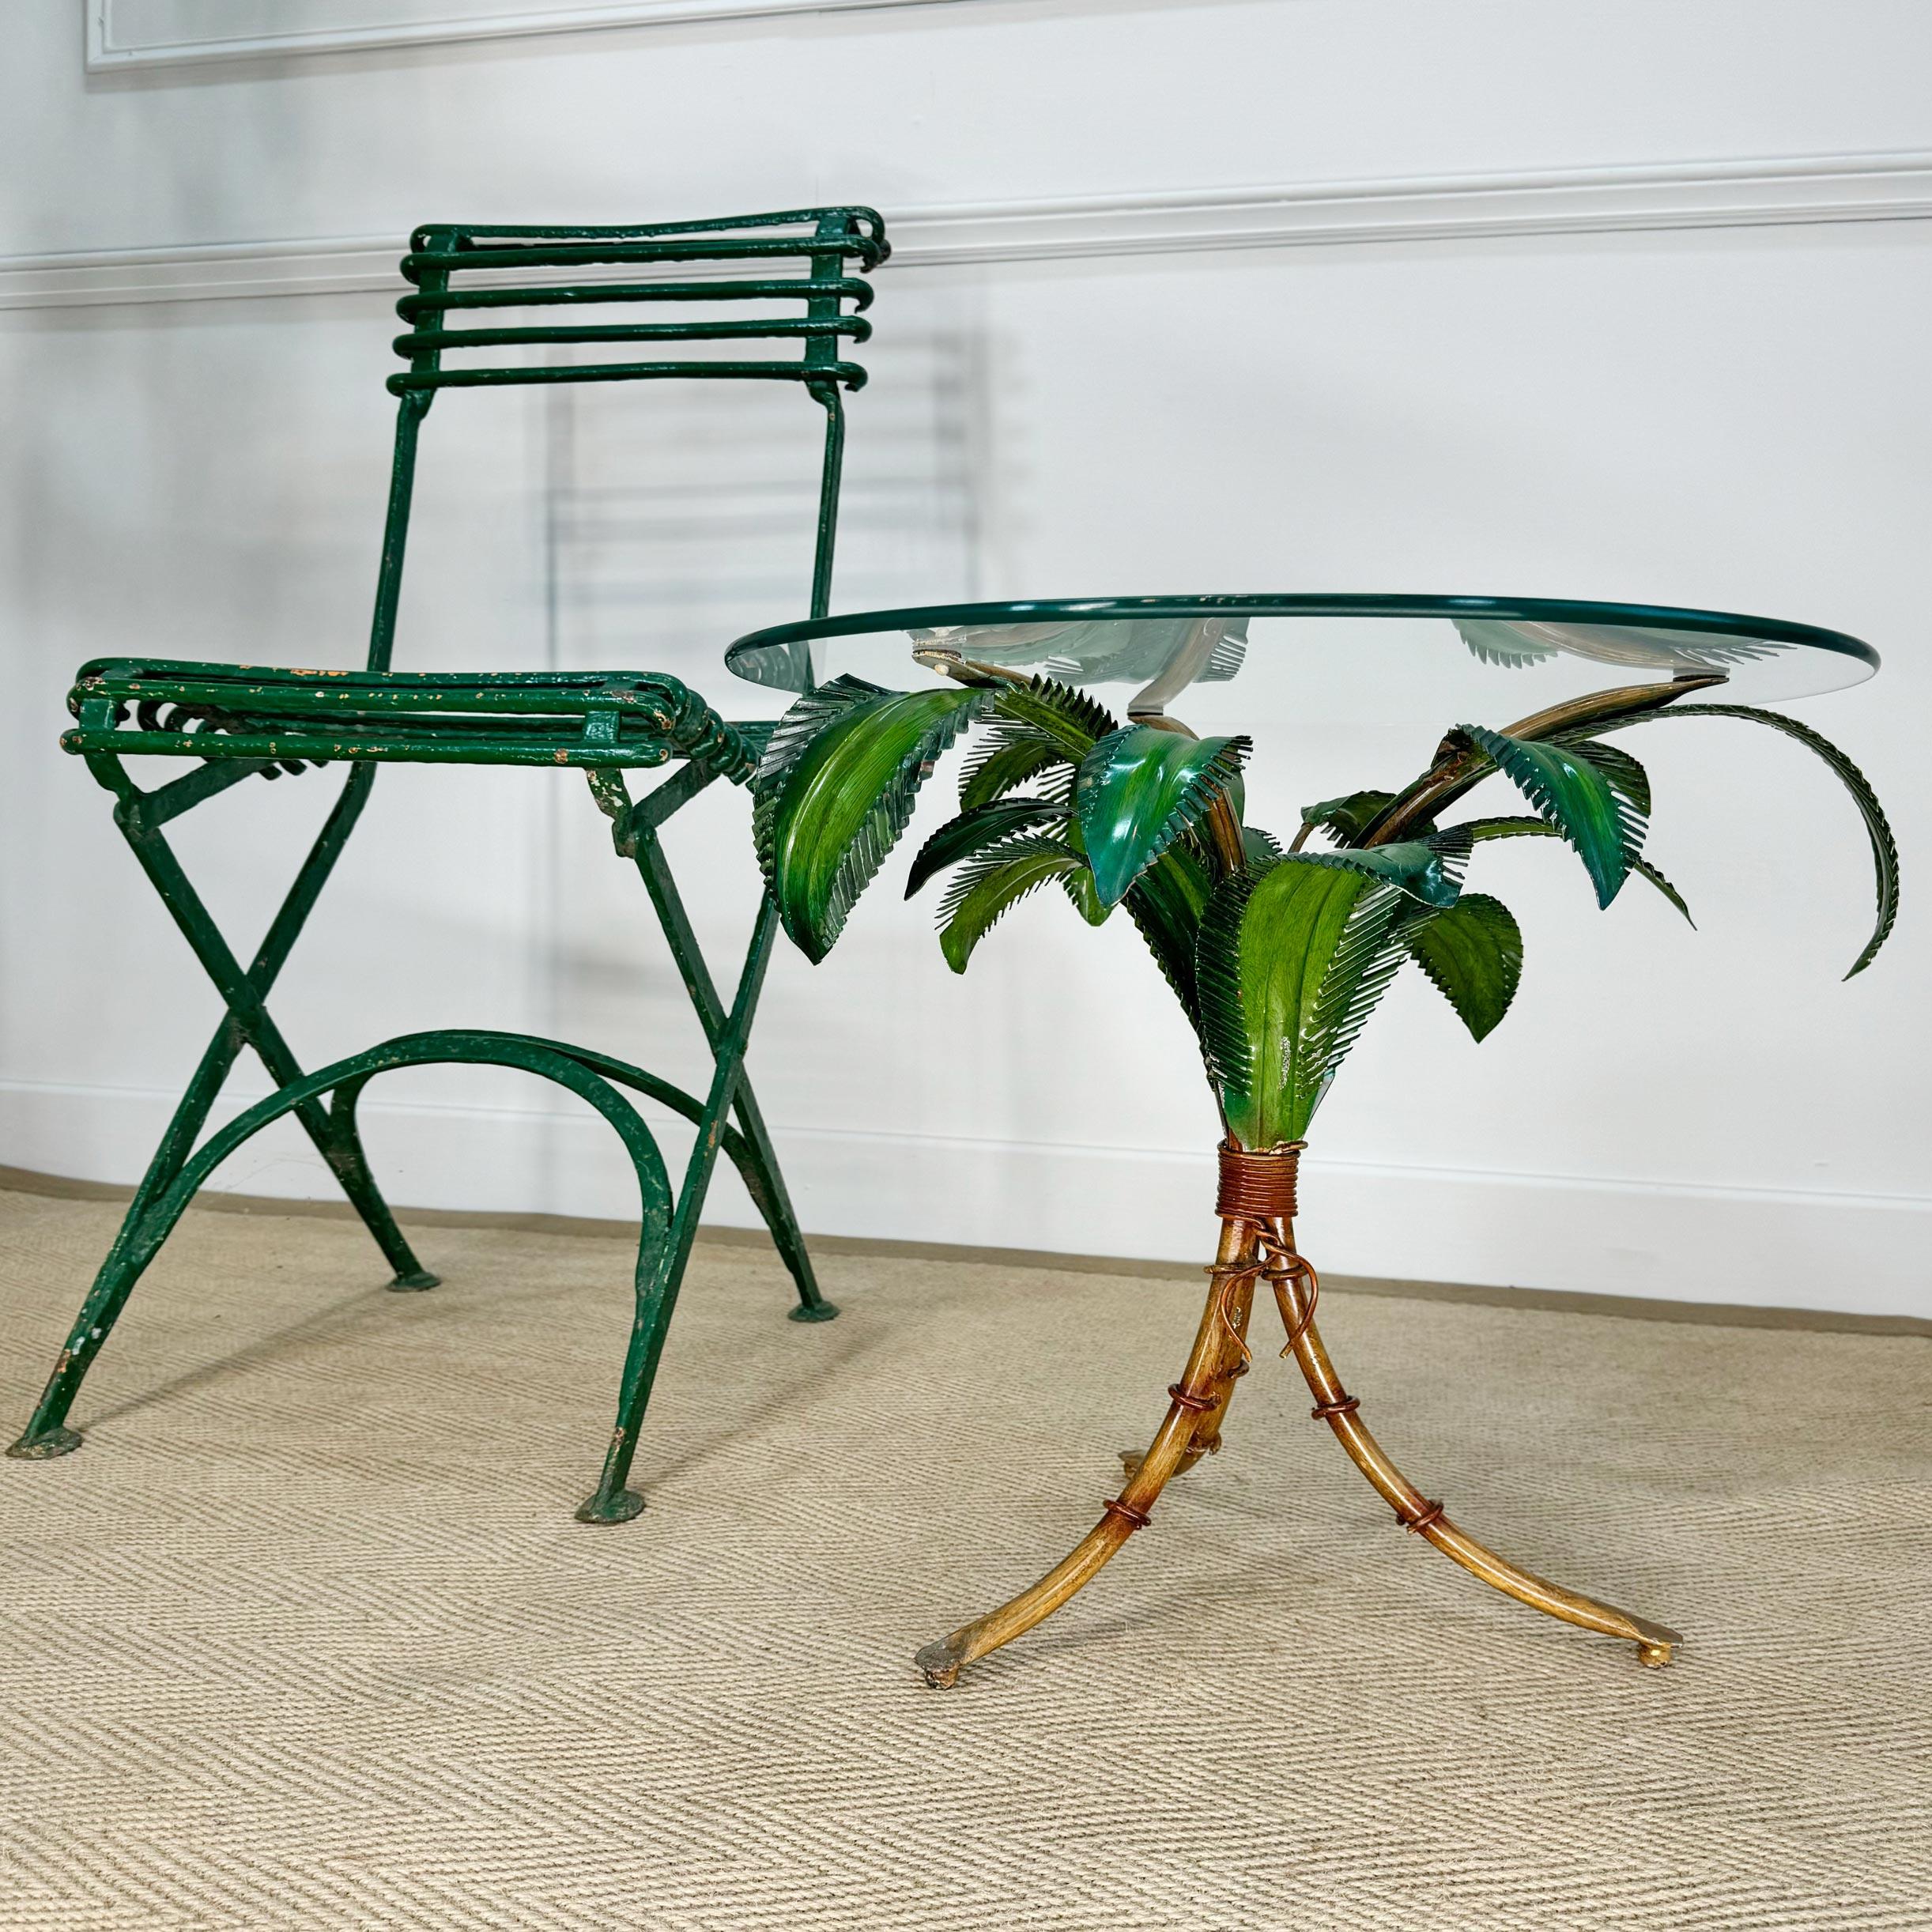 Superbe table en faux bambou peinte en polychrome, italienne et datant des années 1970. Condit avec un plateau en verre vintage, cette table est dans un état exceptionnel.

Petit grignotage à certains endroits du plateau en verre.

Hauteur 43,5cm x